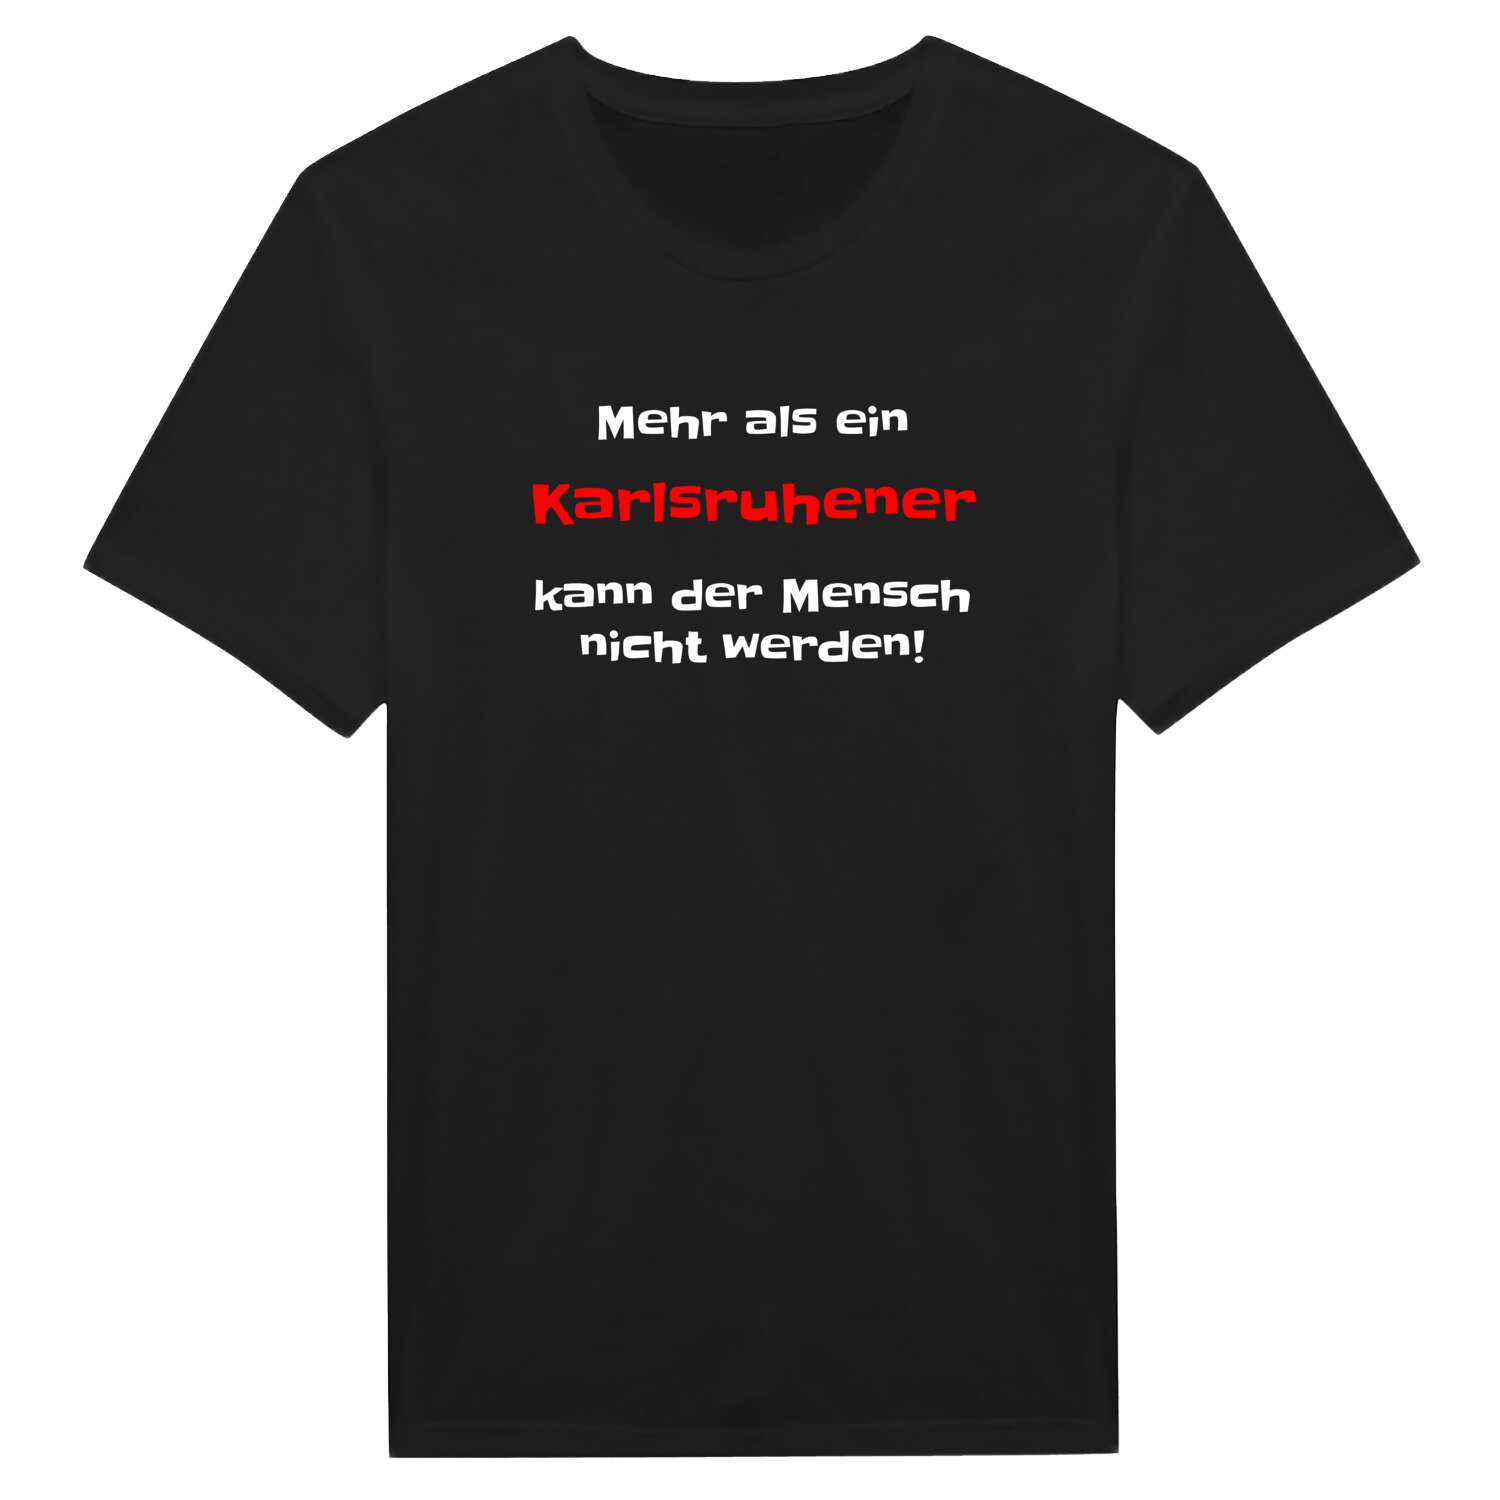 Karlsruhe T-Shirt »Mehr als ein«